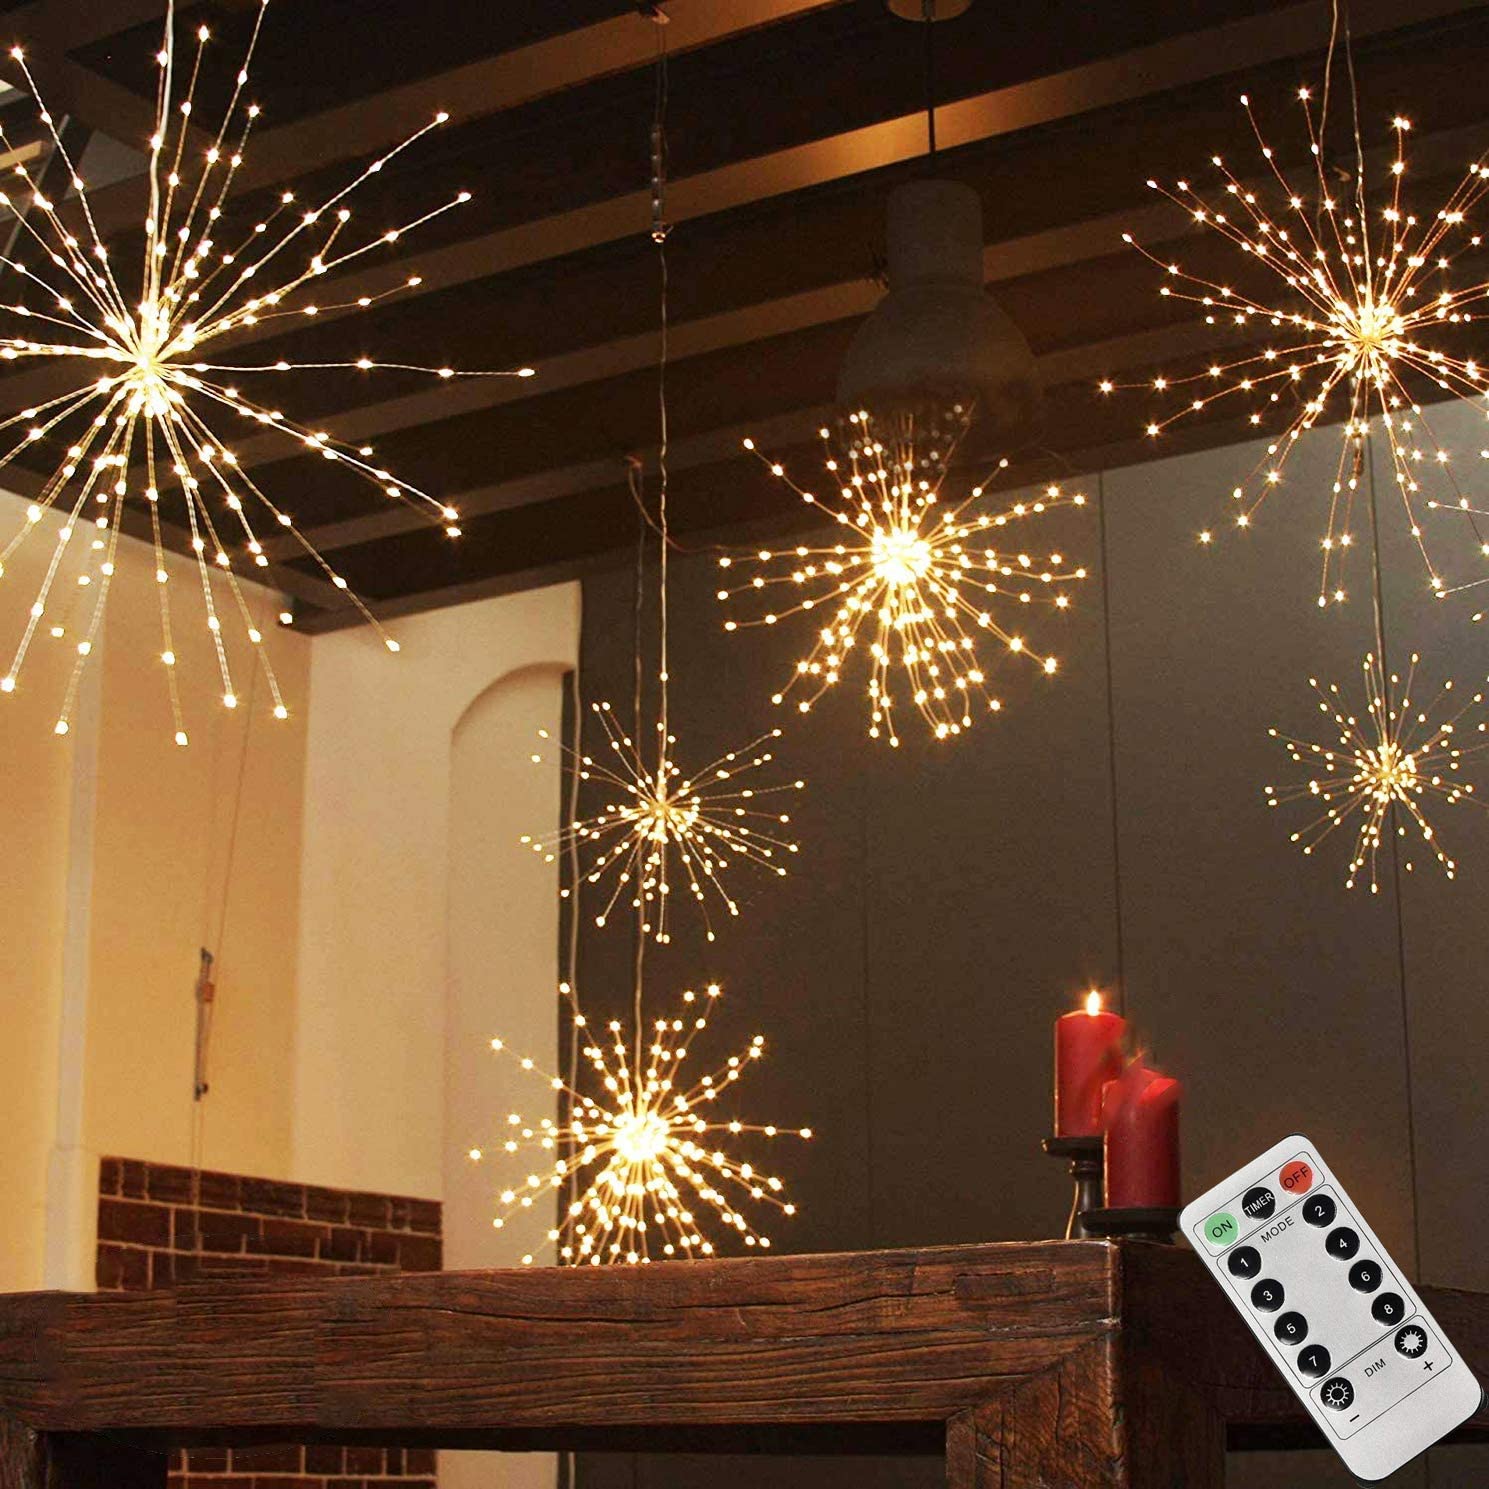 LED Starburst dekorative Euroelectronics hängend – LED 3D DE hängende Feuerwerk Stern Licht